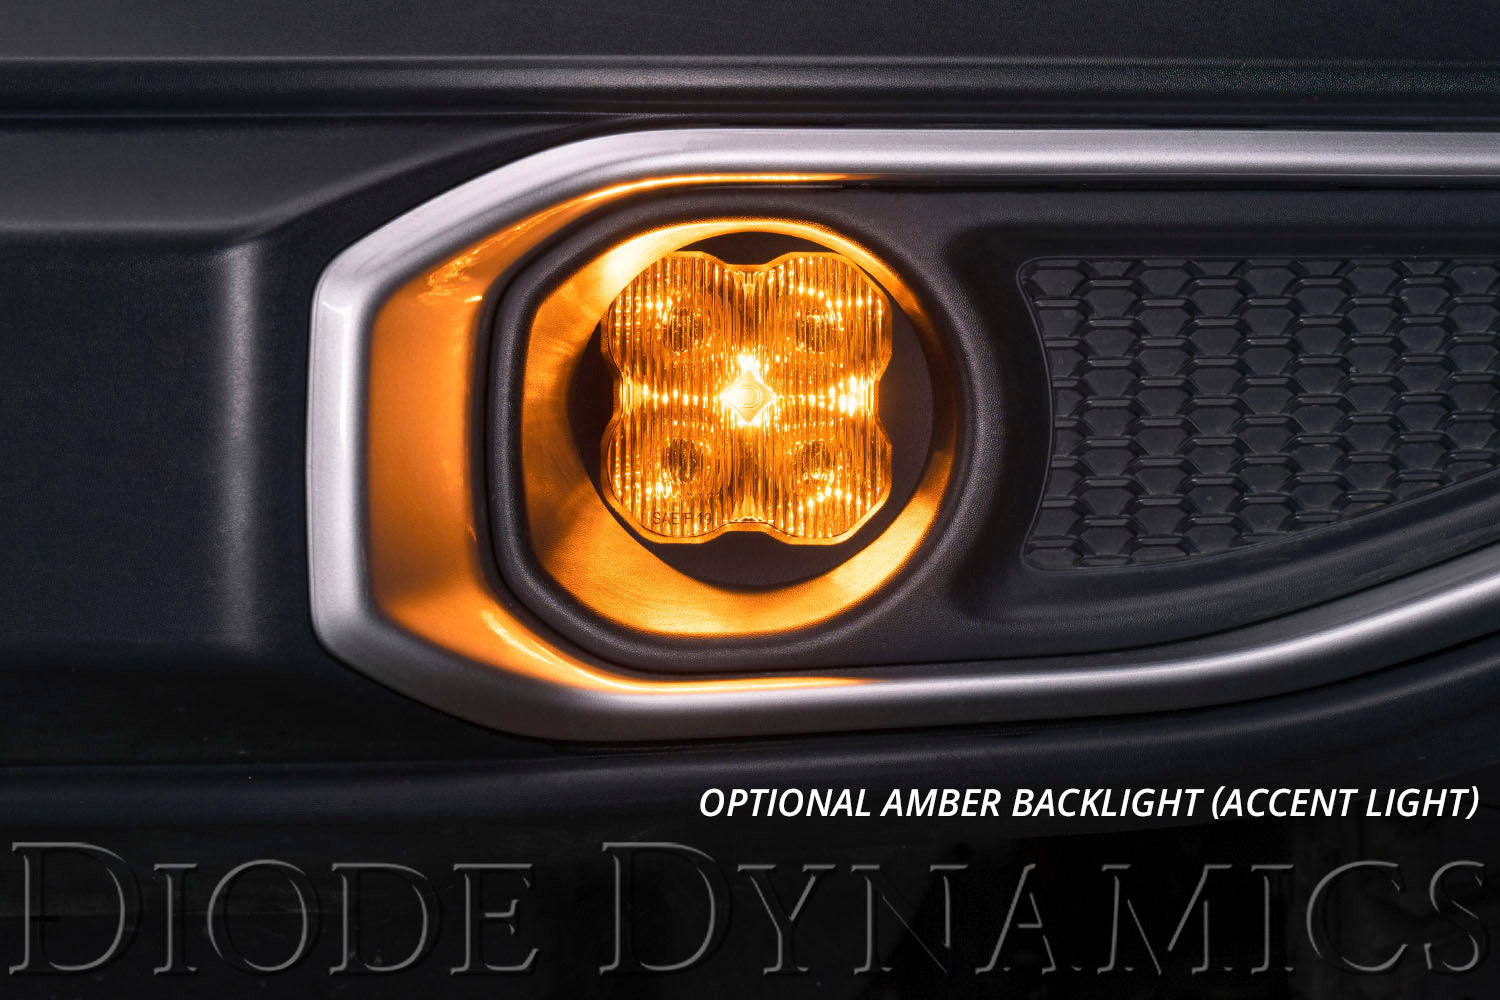 SS3 LED Fog Light Kit for 2012-2016 Toyota Prius C White SAE Fog Max w/ Backlight Diode Dynamics